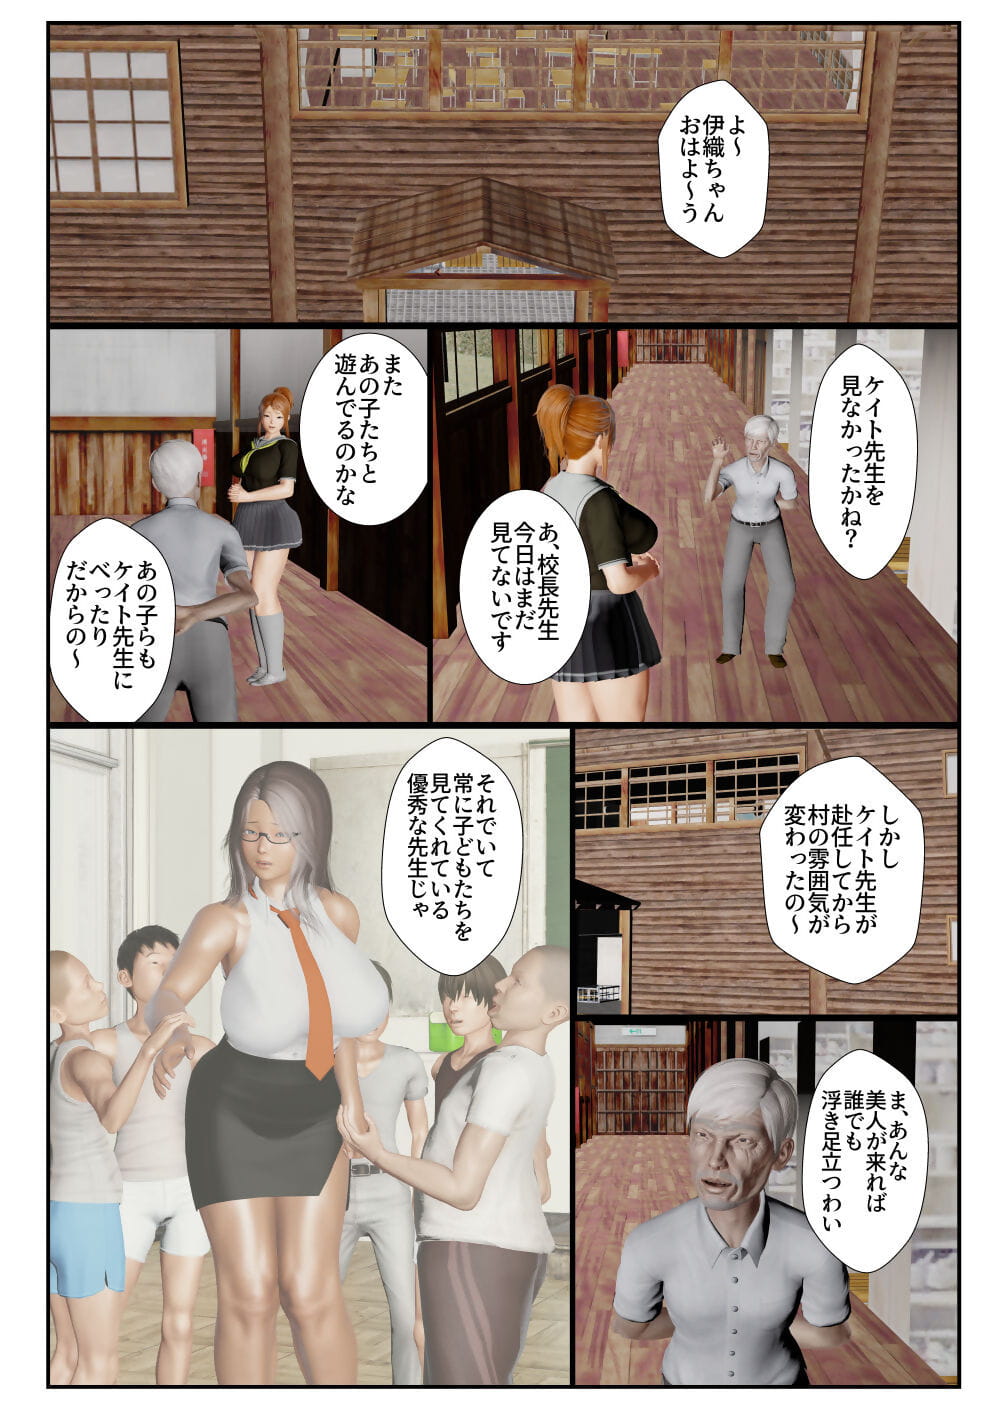 Goriramu Touma kenshi shiriizu Demon Swordsman Series - part 4 page 1